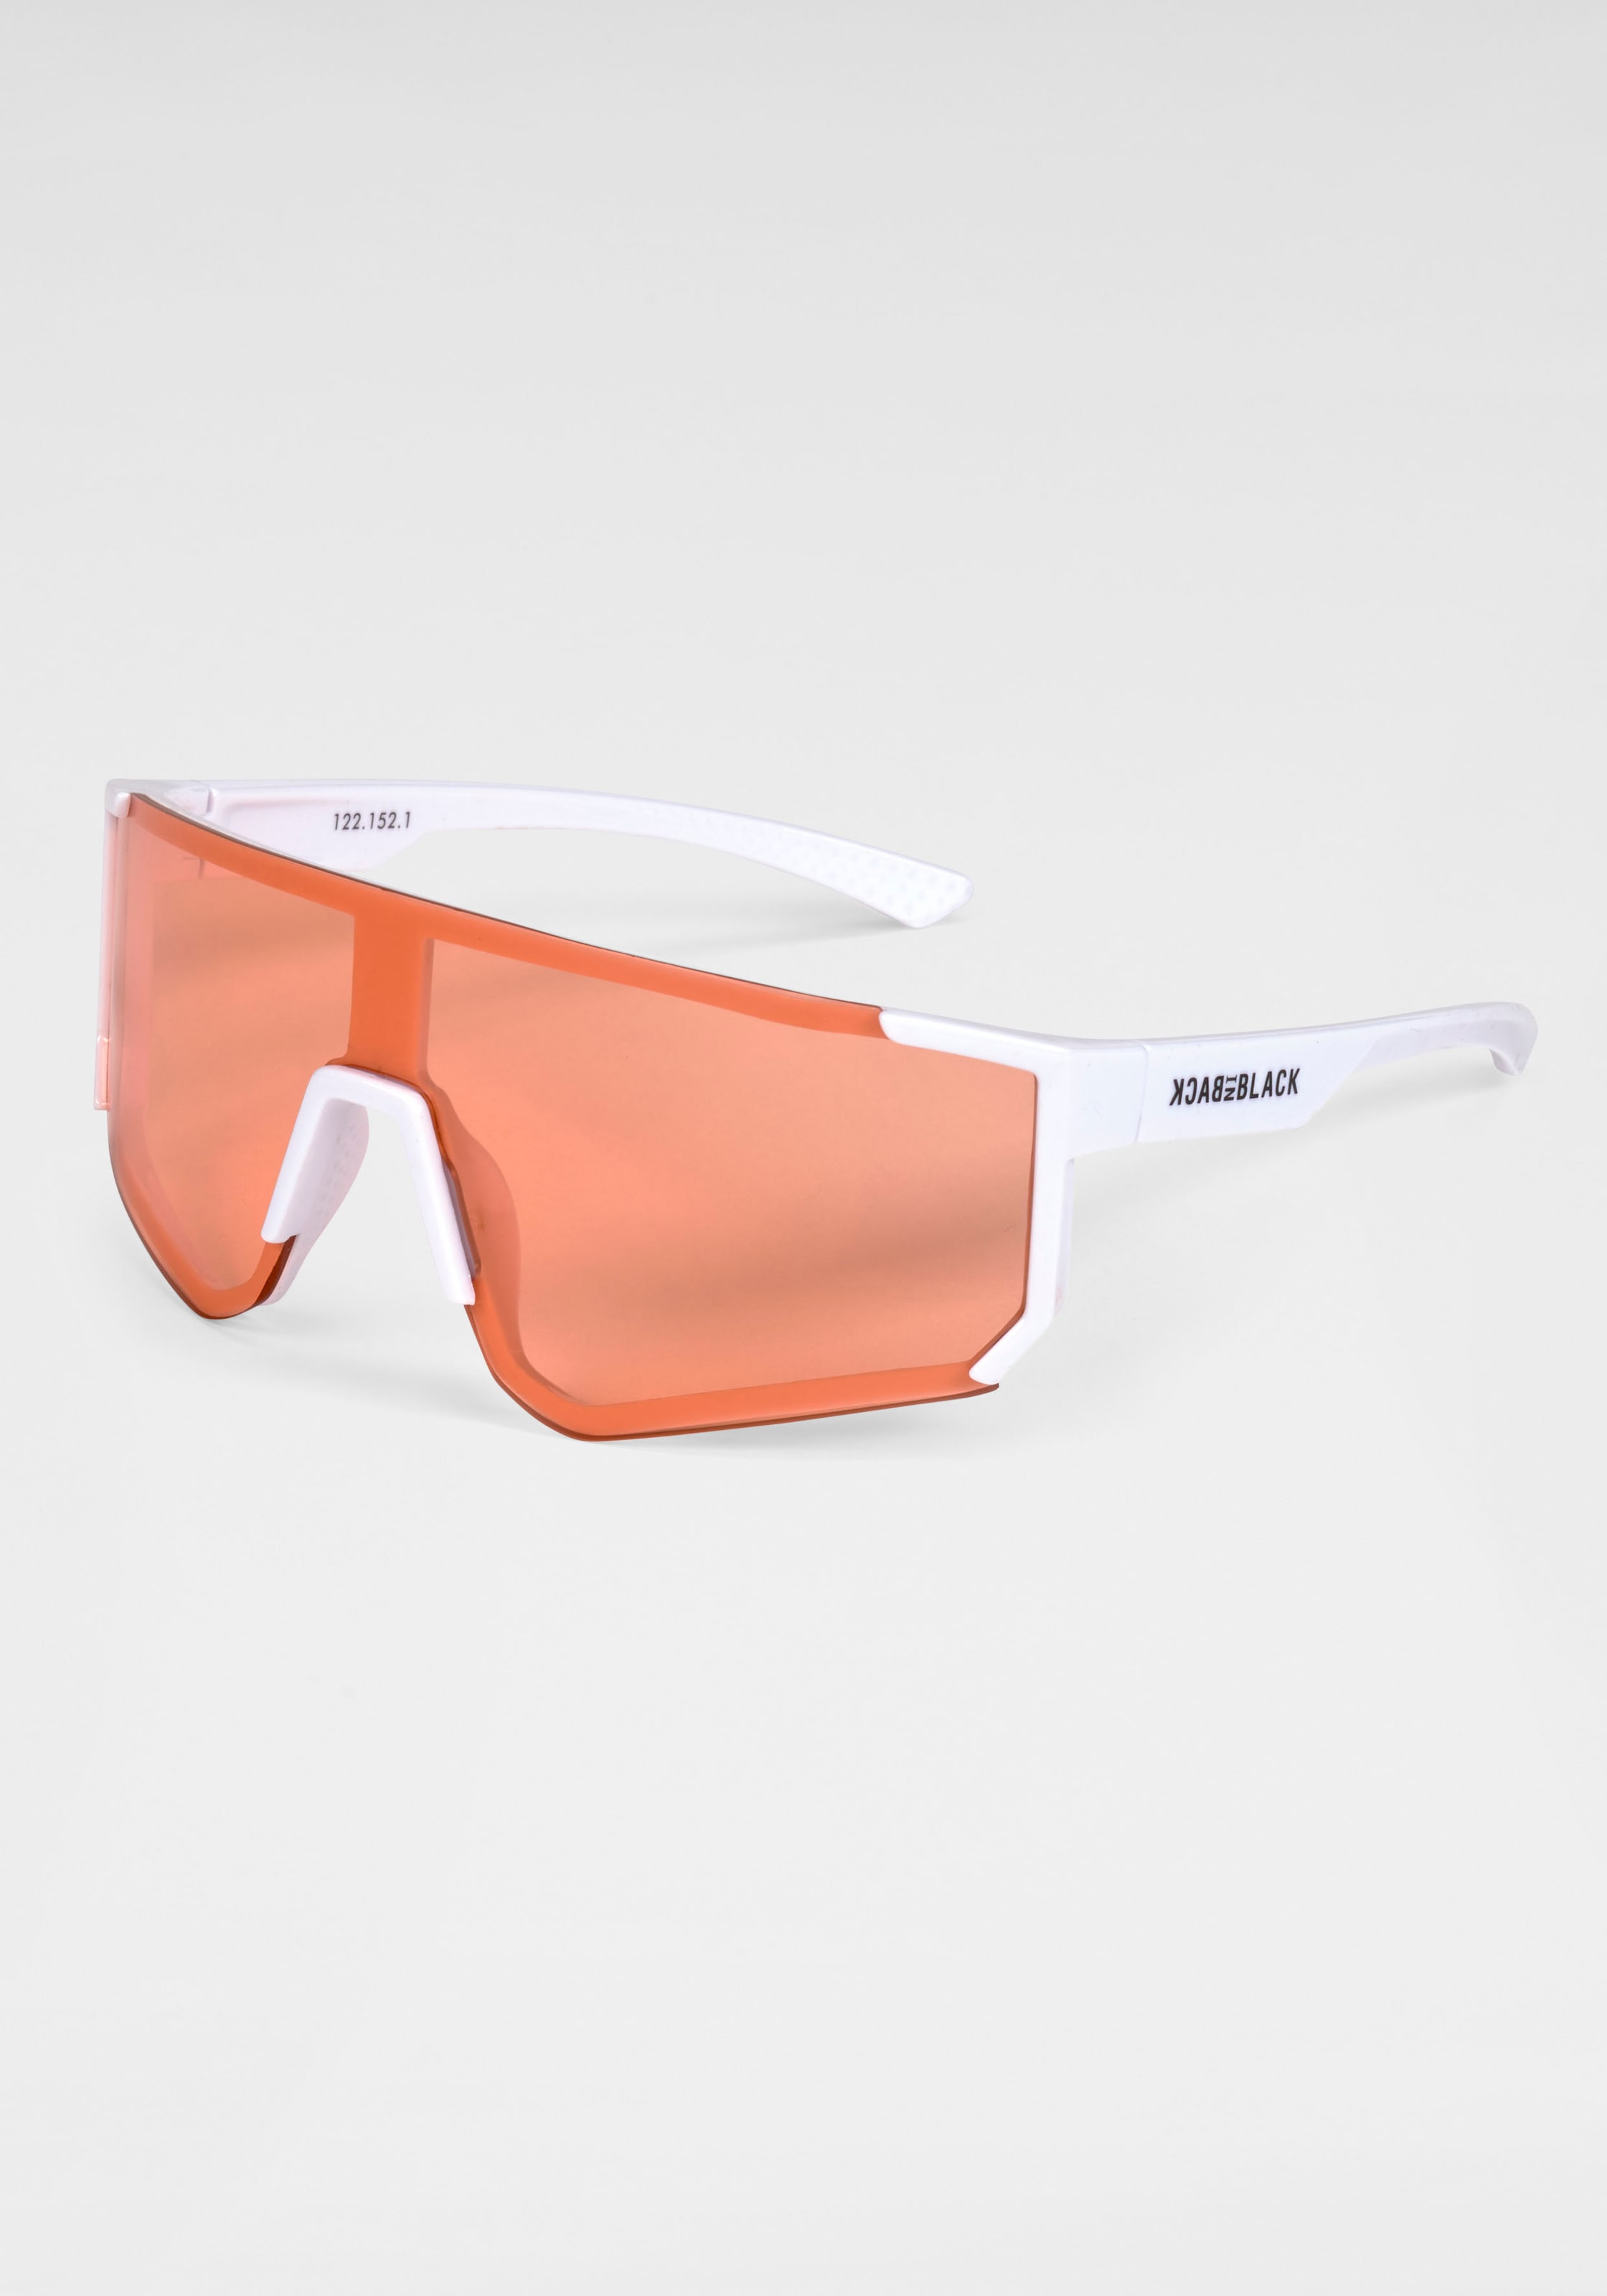 BACK IN BLACK Eyewear Sonnenbrille, Stylische Sportbrille mit weissem Rahmen und orangenen Gläsern